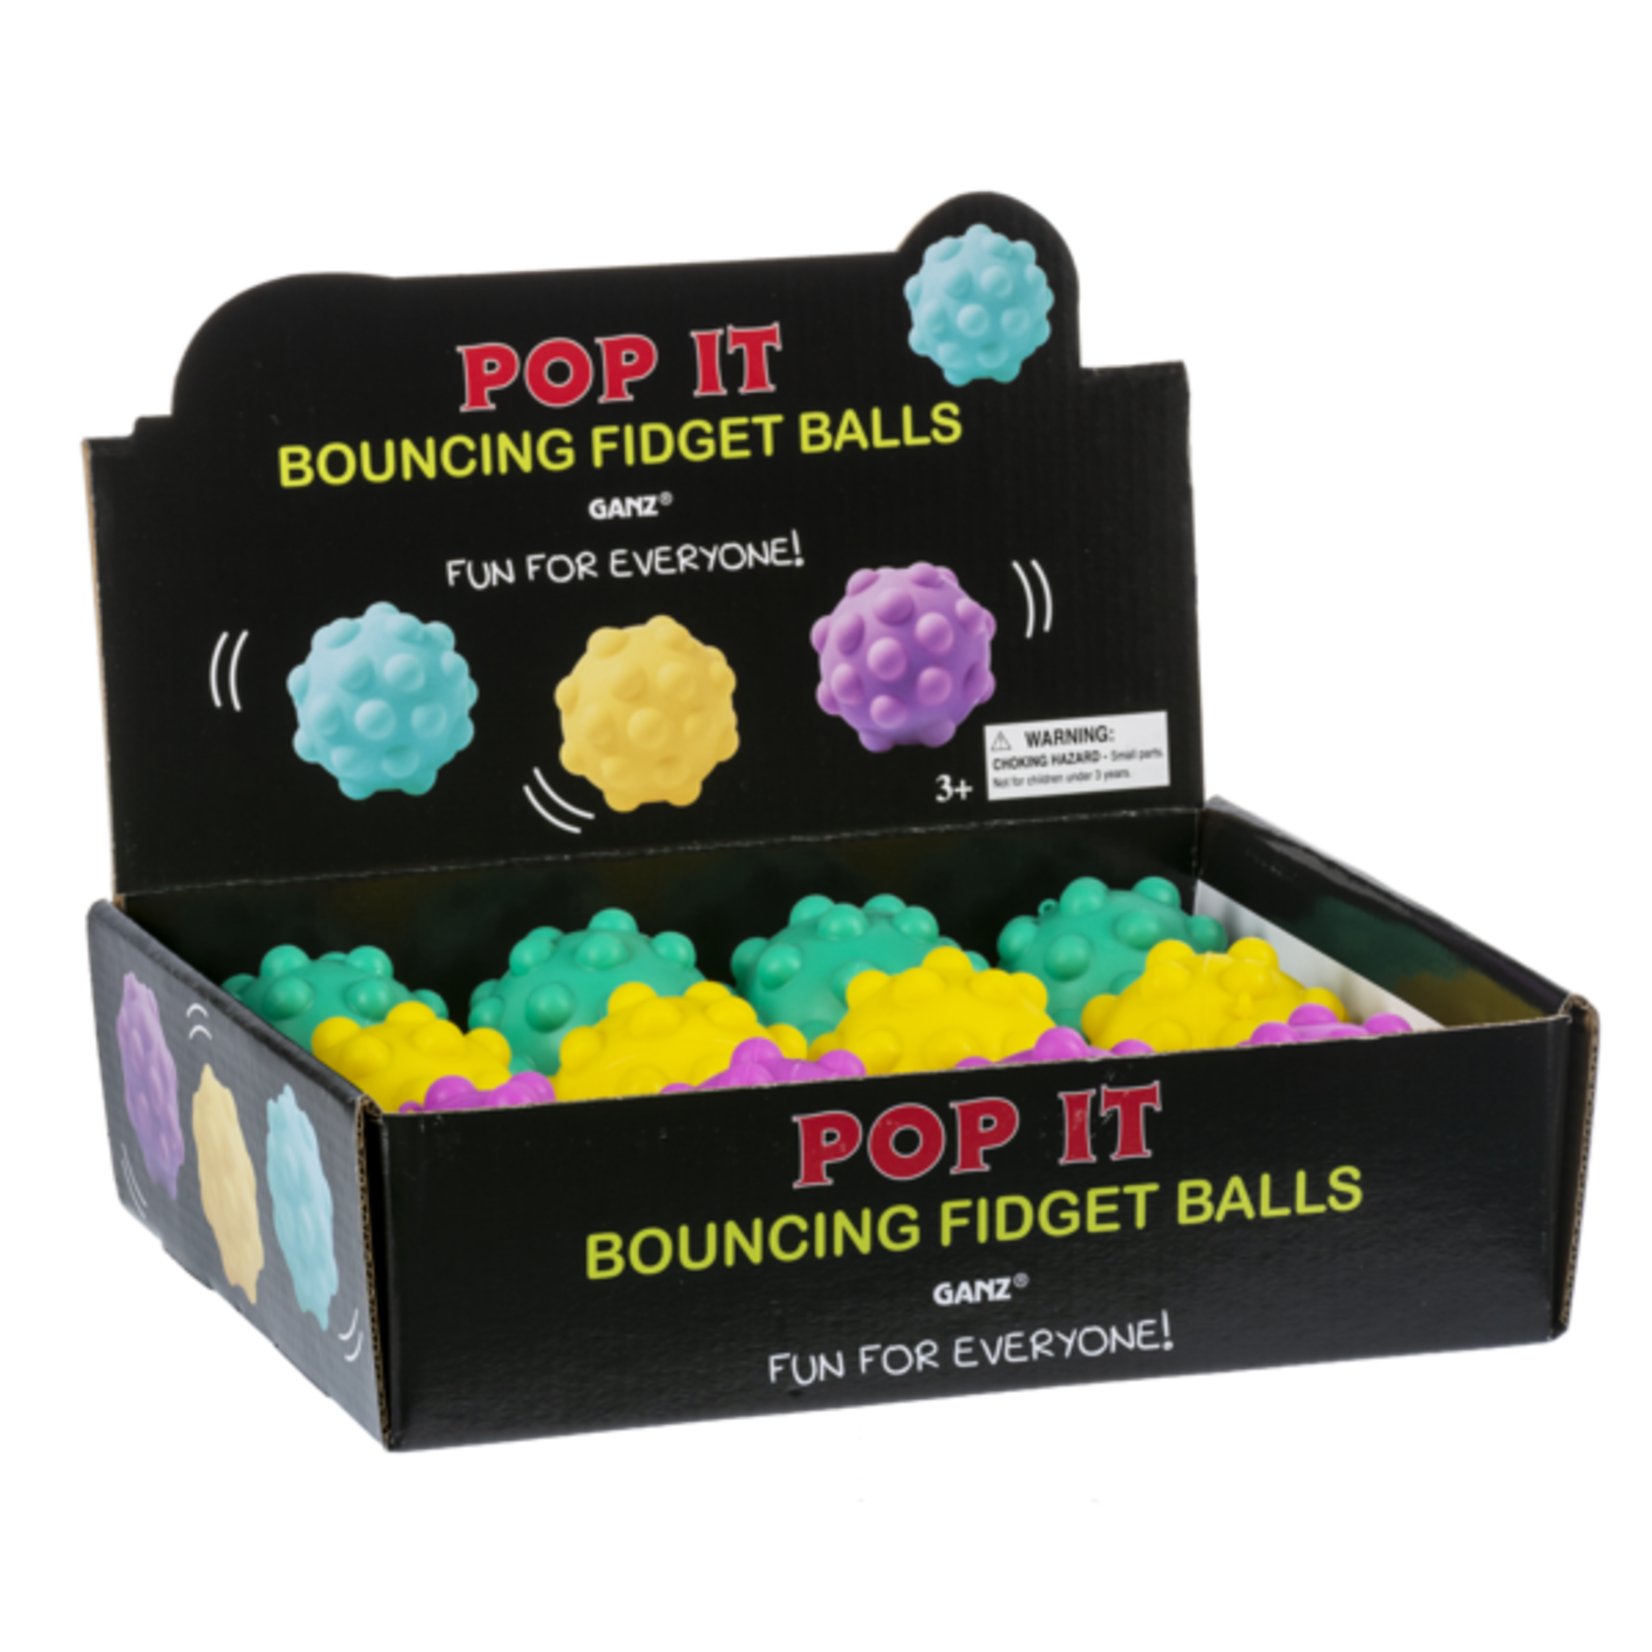 https://cdn.shoplightspeed.com/shops/652392/files/50105613/1652x1652x2/pop-it-bouncing-fidget-ball.jpg